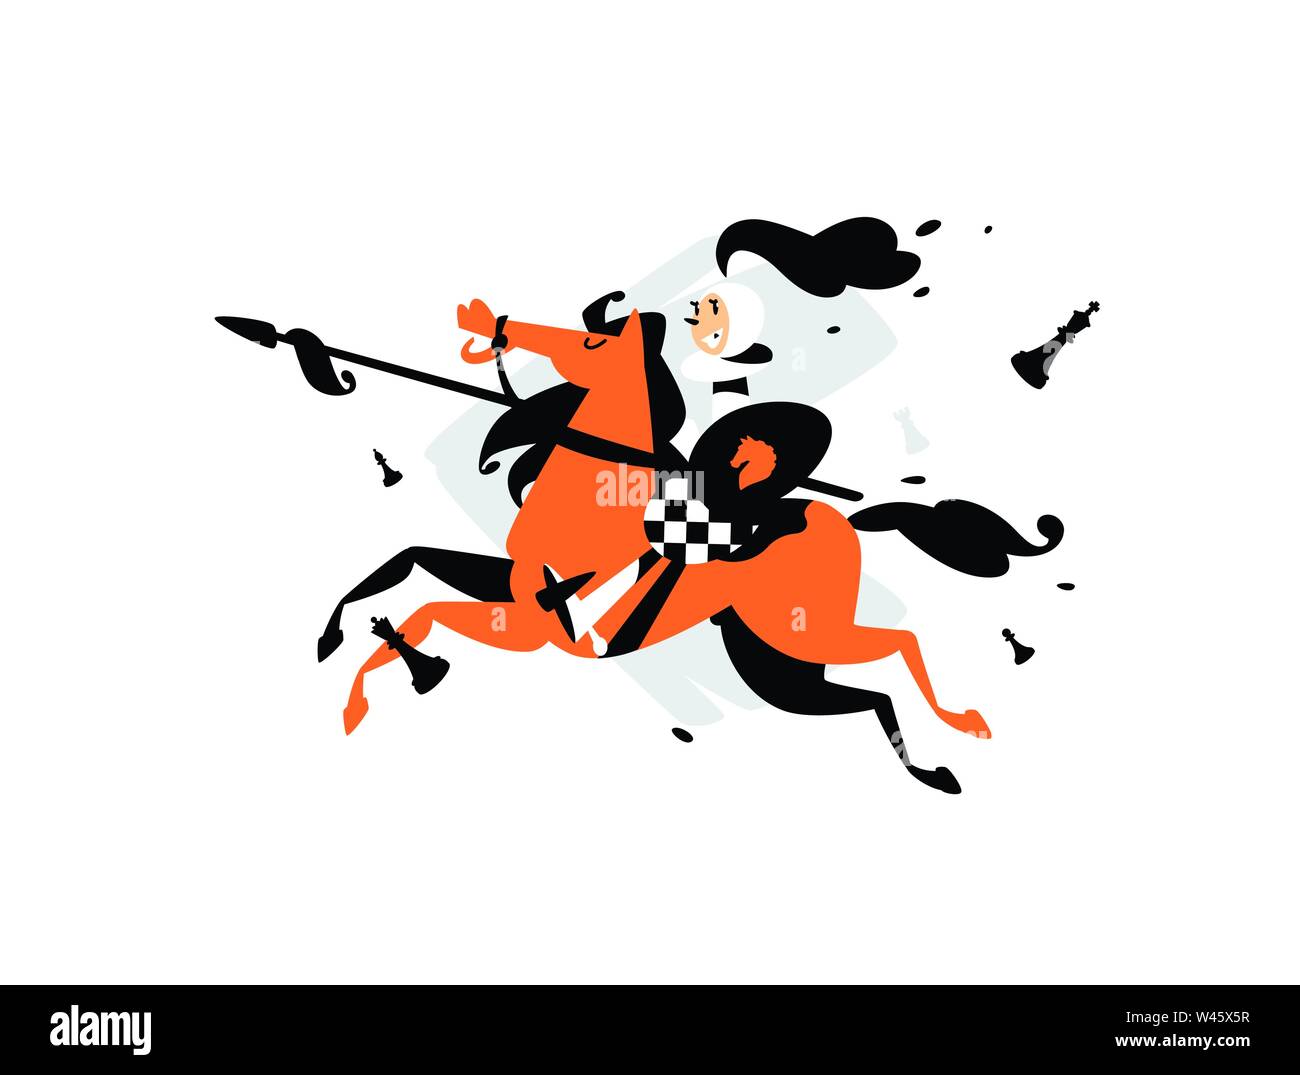 Illustrazione di pegni a cavallo con una lancia. Illustrazione Vettoriale. Illustrazione per poster, striscioni. La concorrenza negli scacchi. Immagine è isolato su Illustrazione Vettoriale